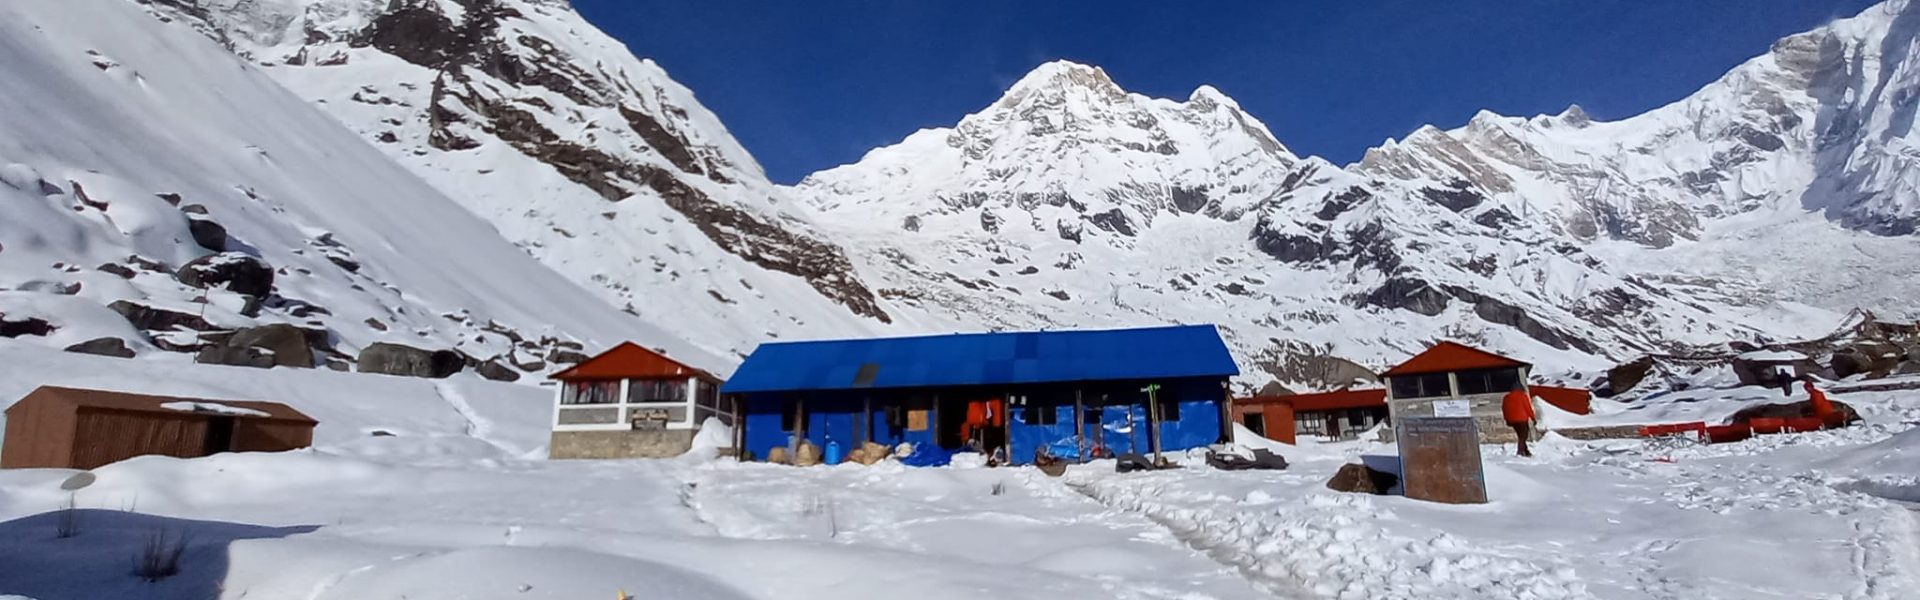 Budget Annapurna Base Camp Trek